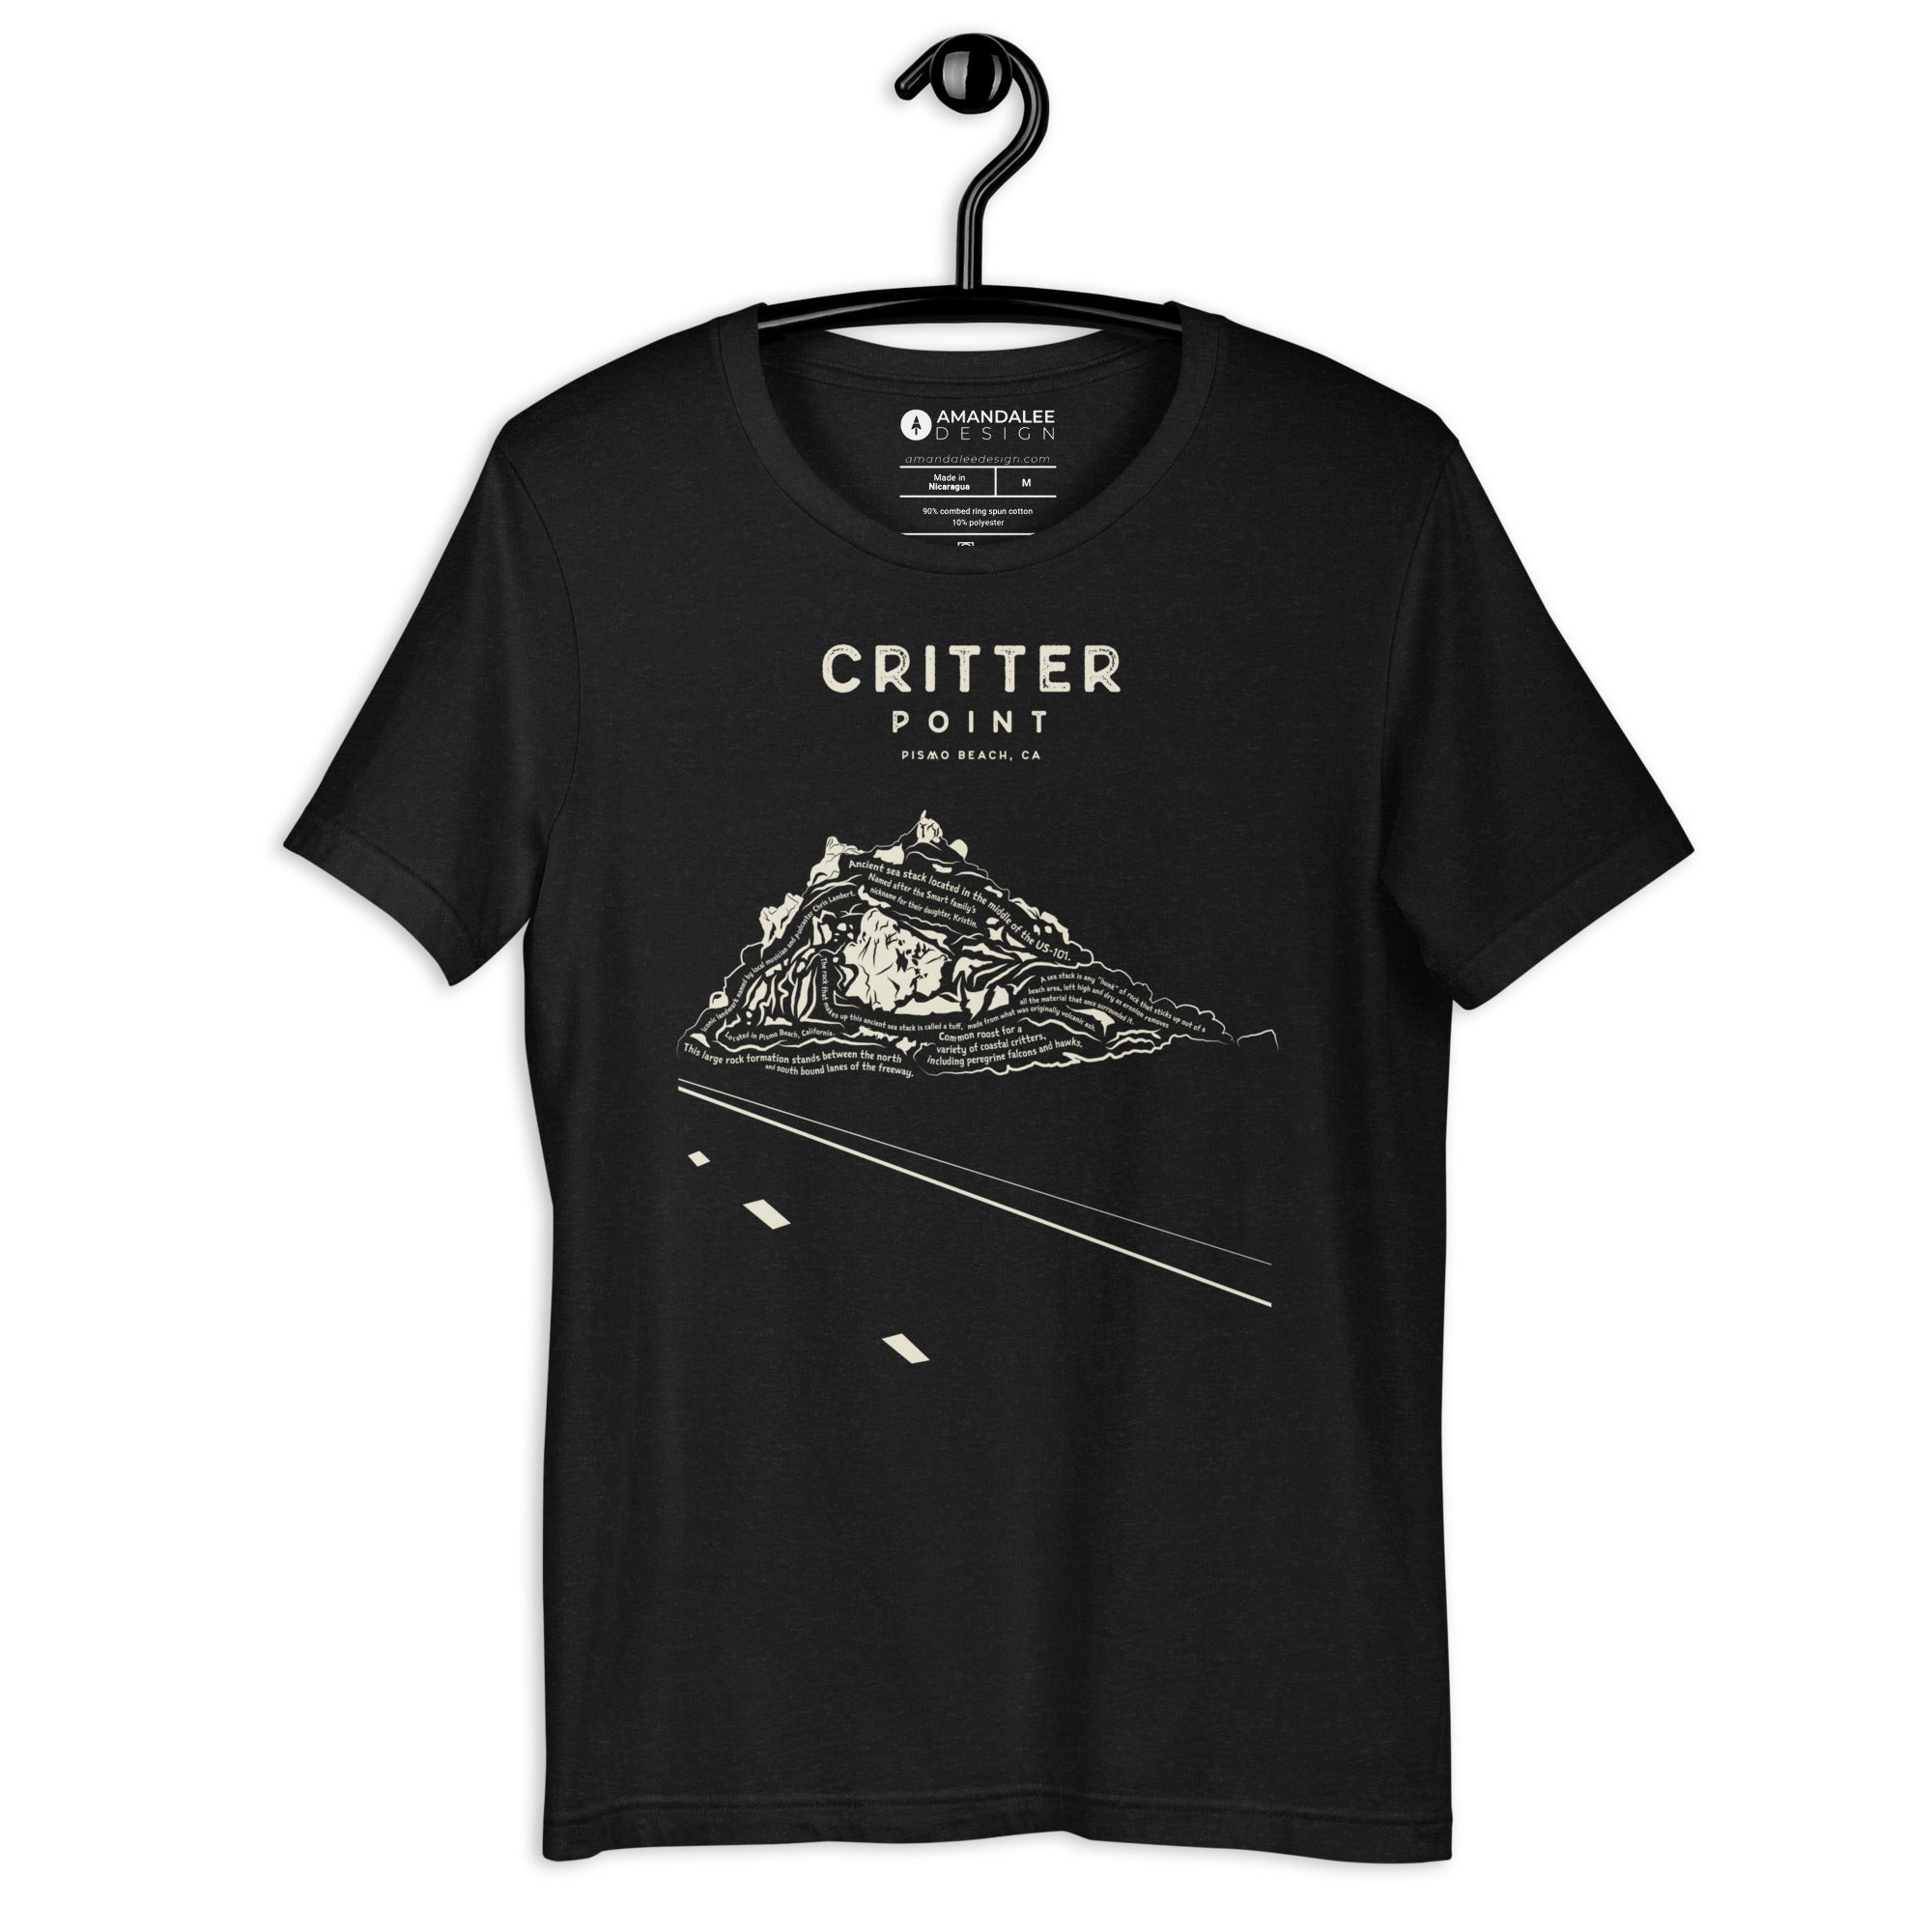 Critter Point Unisex Short Sleeve Shirt (Kristin Smart Scholarship)